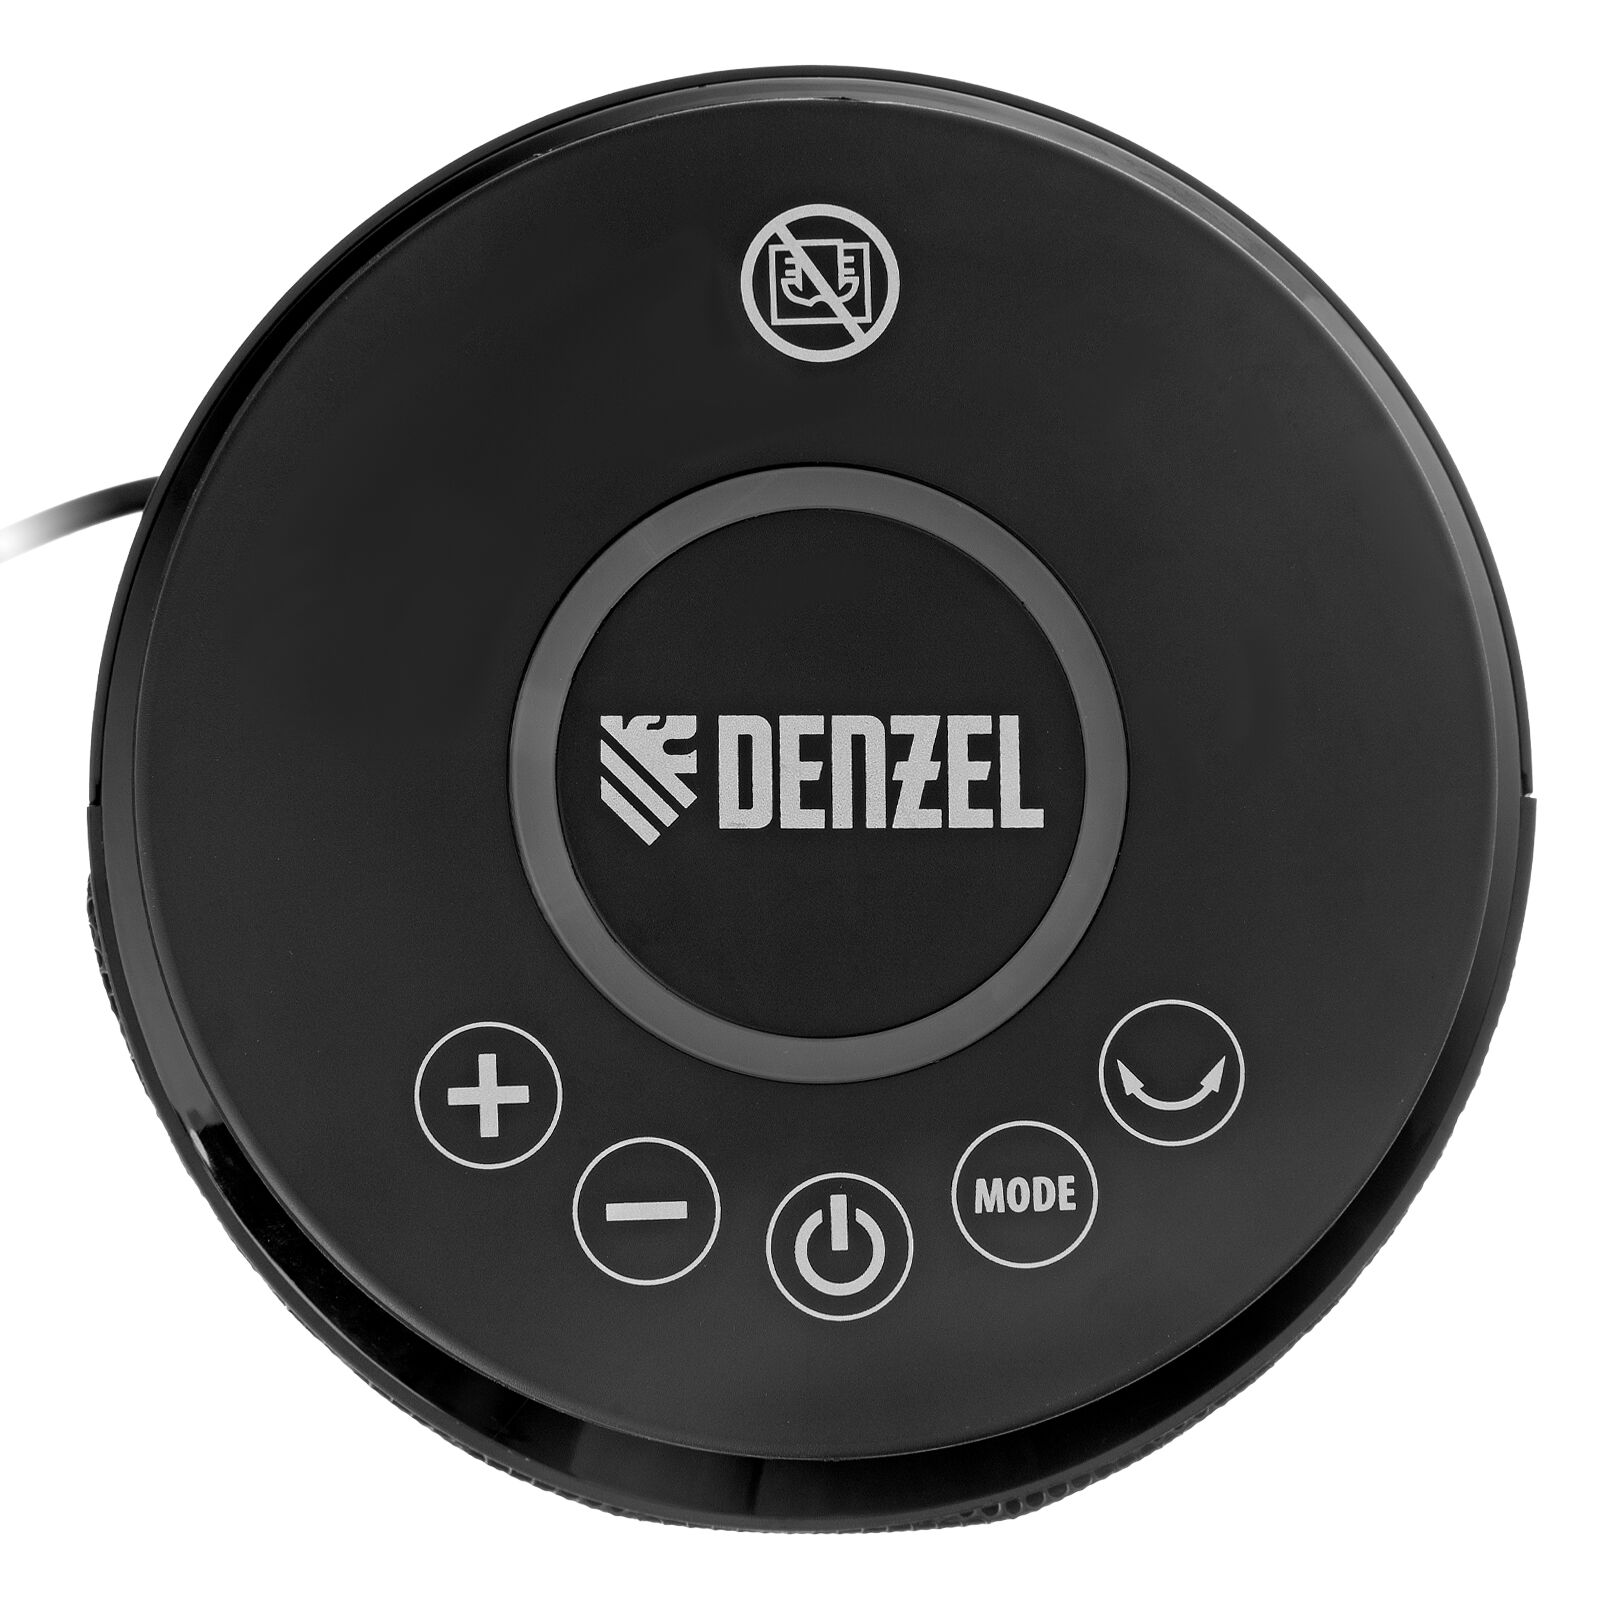 Тепловентилятор керамический DTFC-2000X, 2 кВт, wi-fi, пульт, динамик, вращение, 3 реж. // Denzel 9